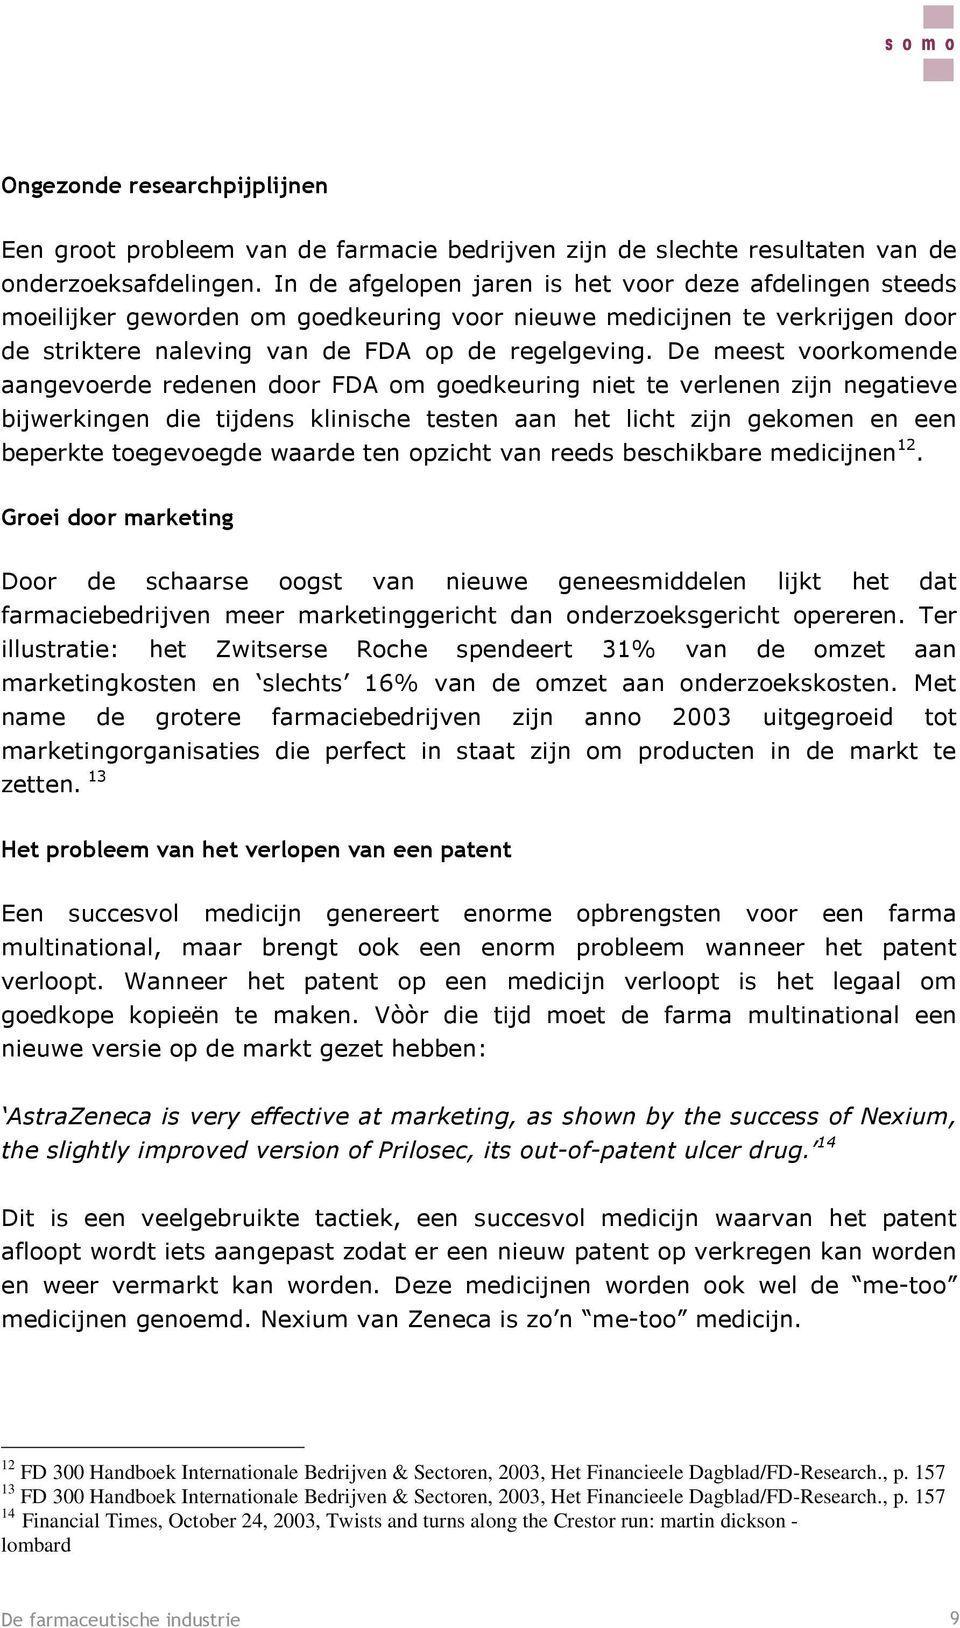 2003, Het Financieele Dagblad/FD-Research., p.